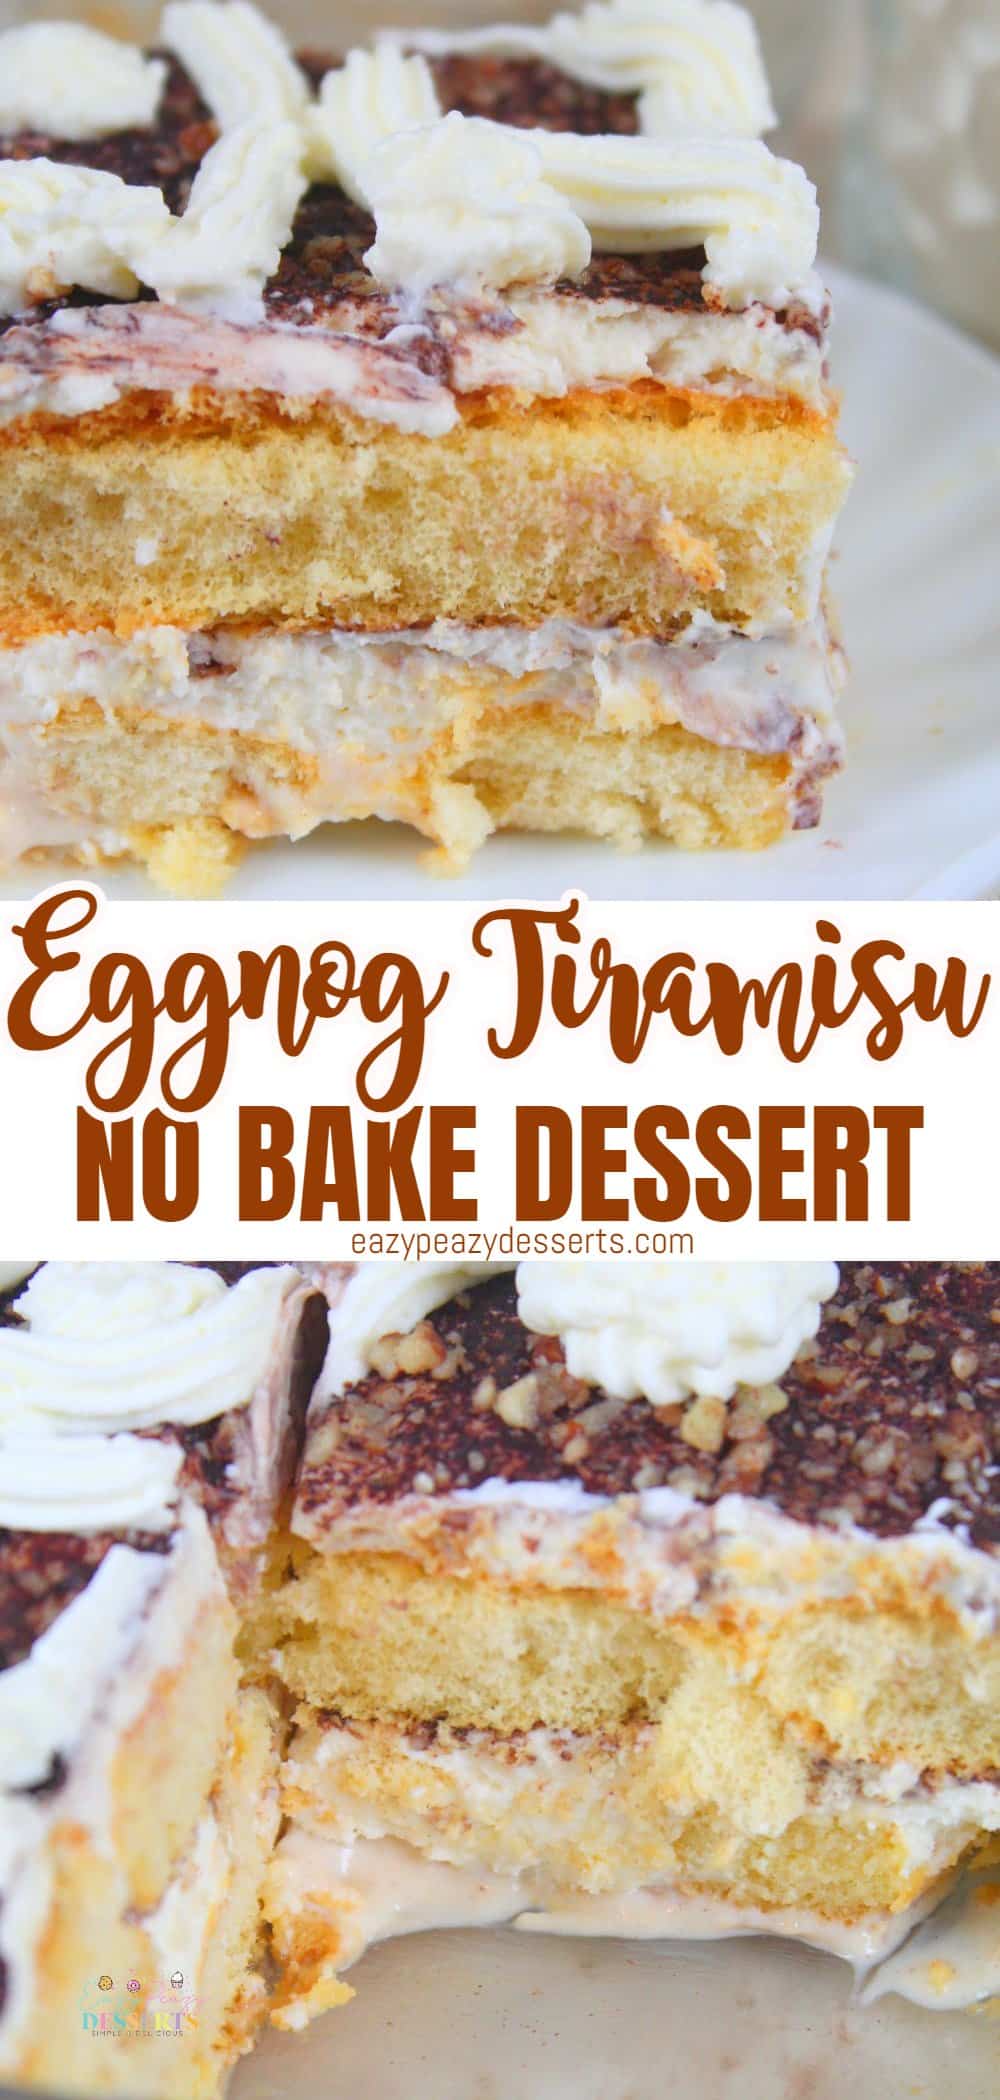 Eggnog dessert recipe with ladyfingers